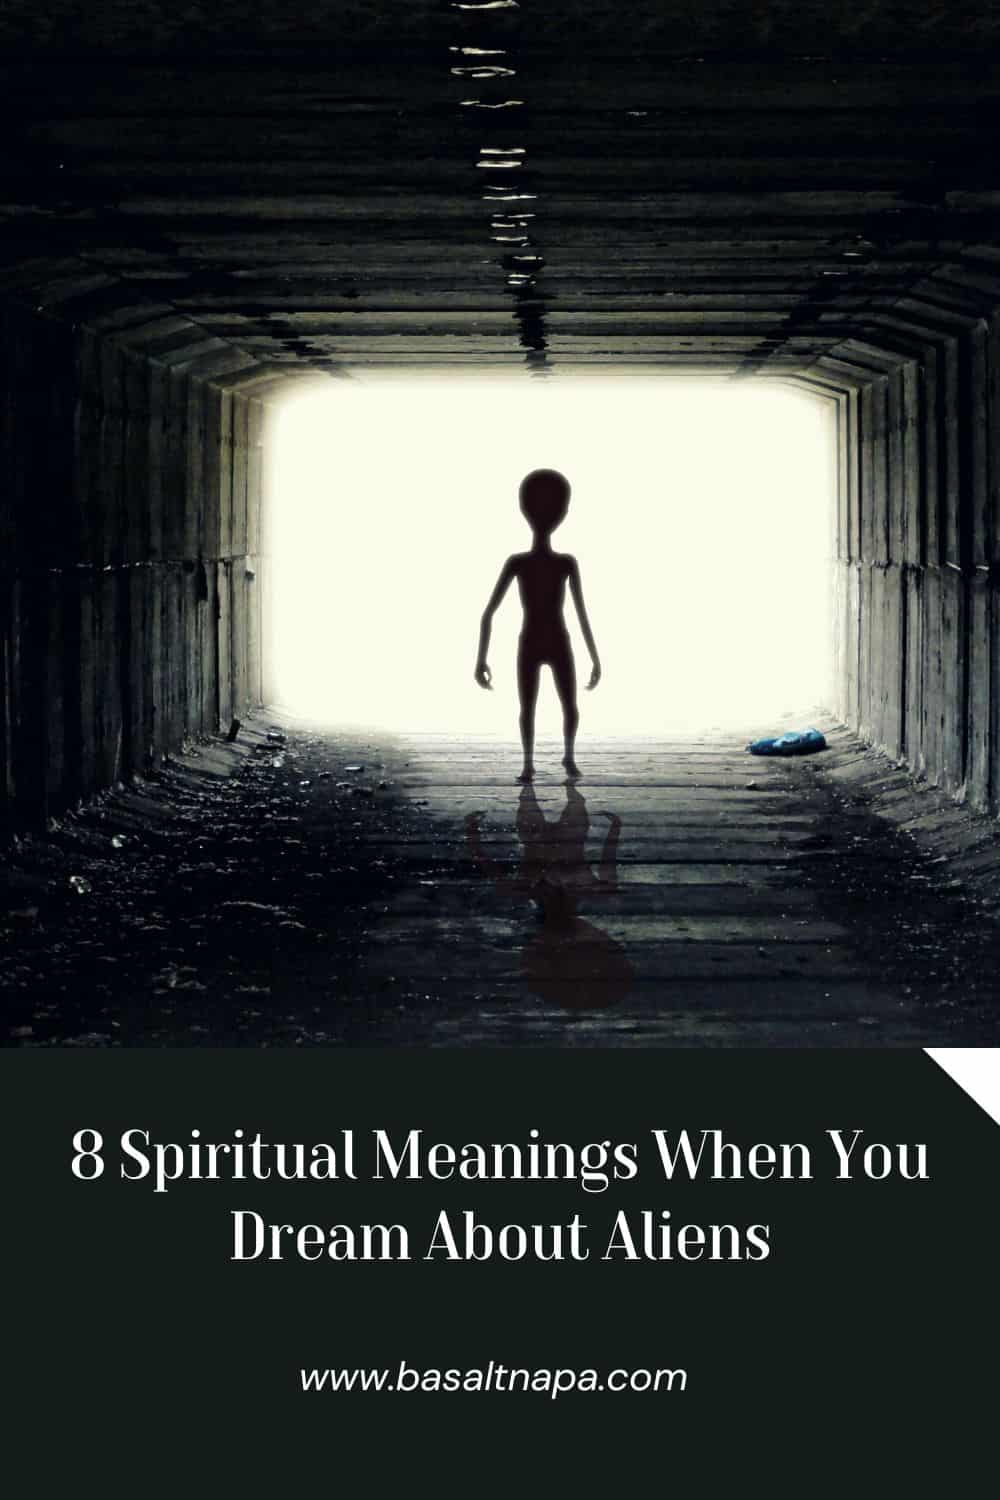 Spiritual Meanings of Aliens in Dreams